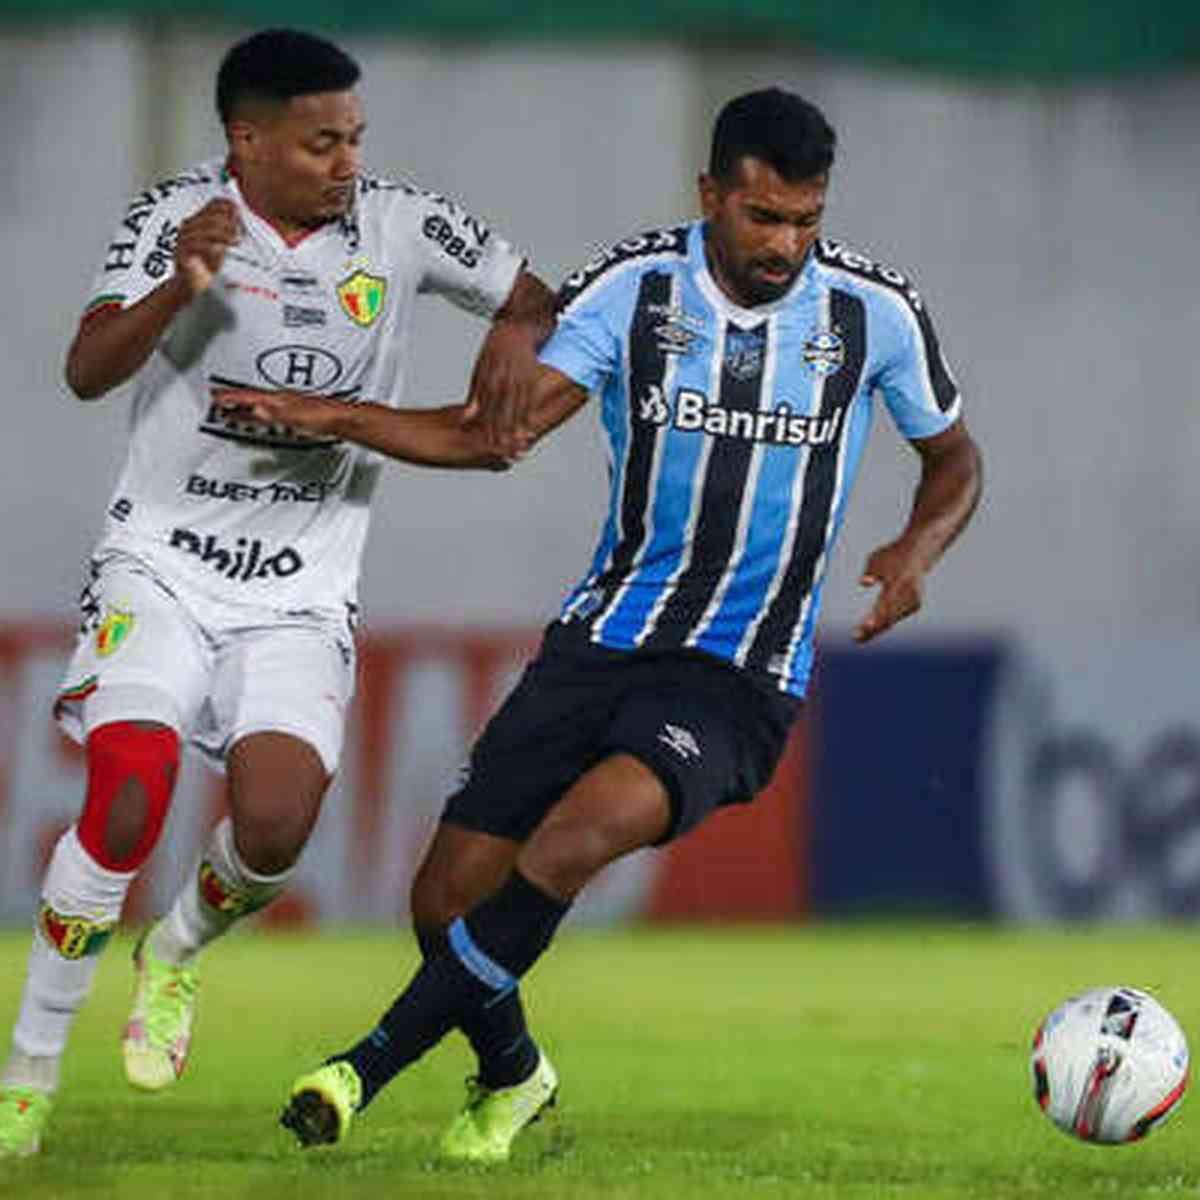 Ceará SC vs. Tombense: A Clash of Two Strong Football Teams